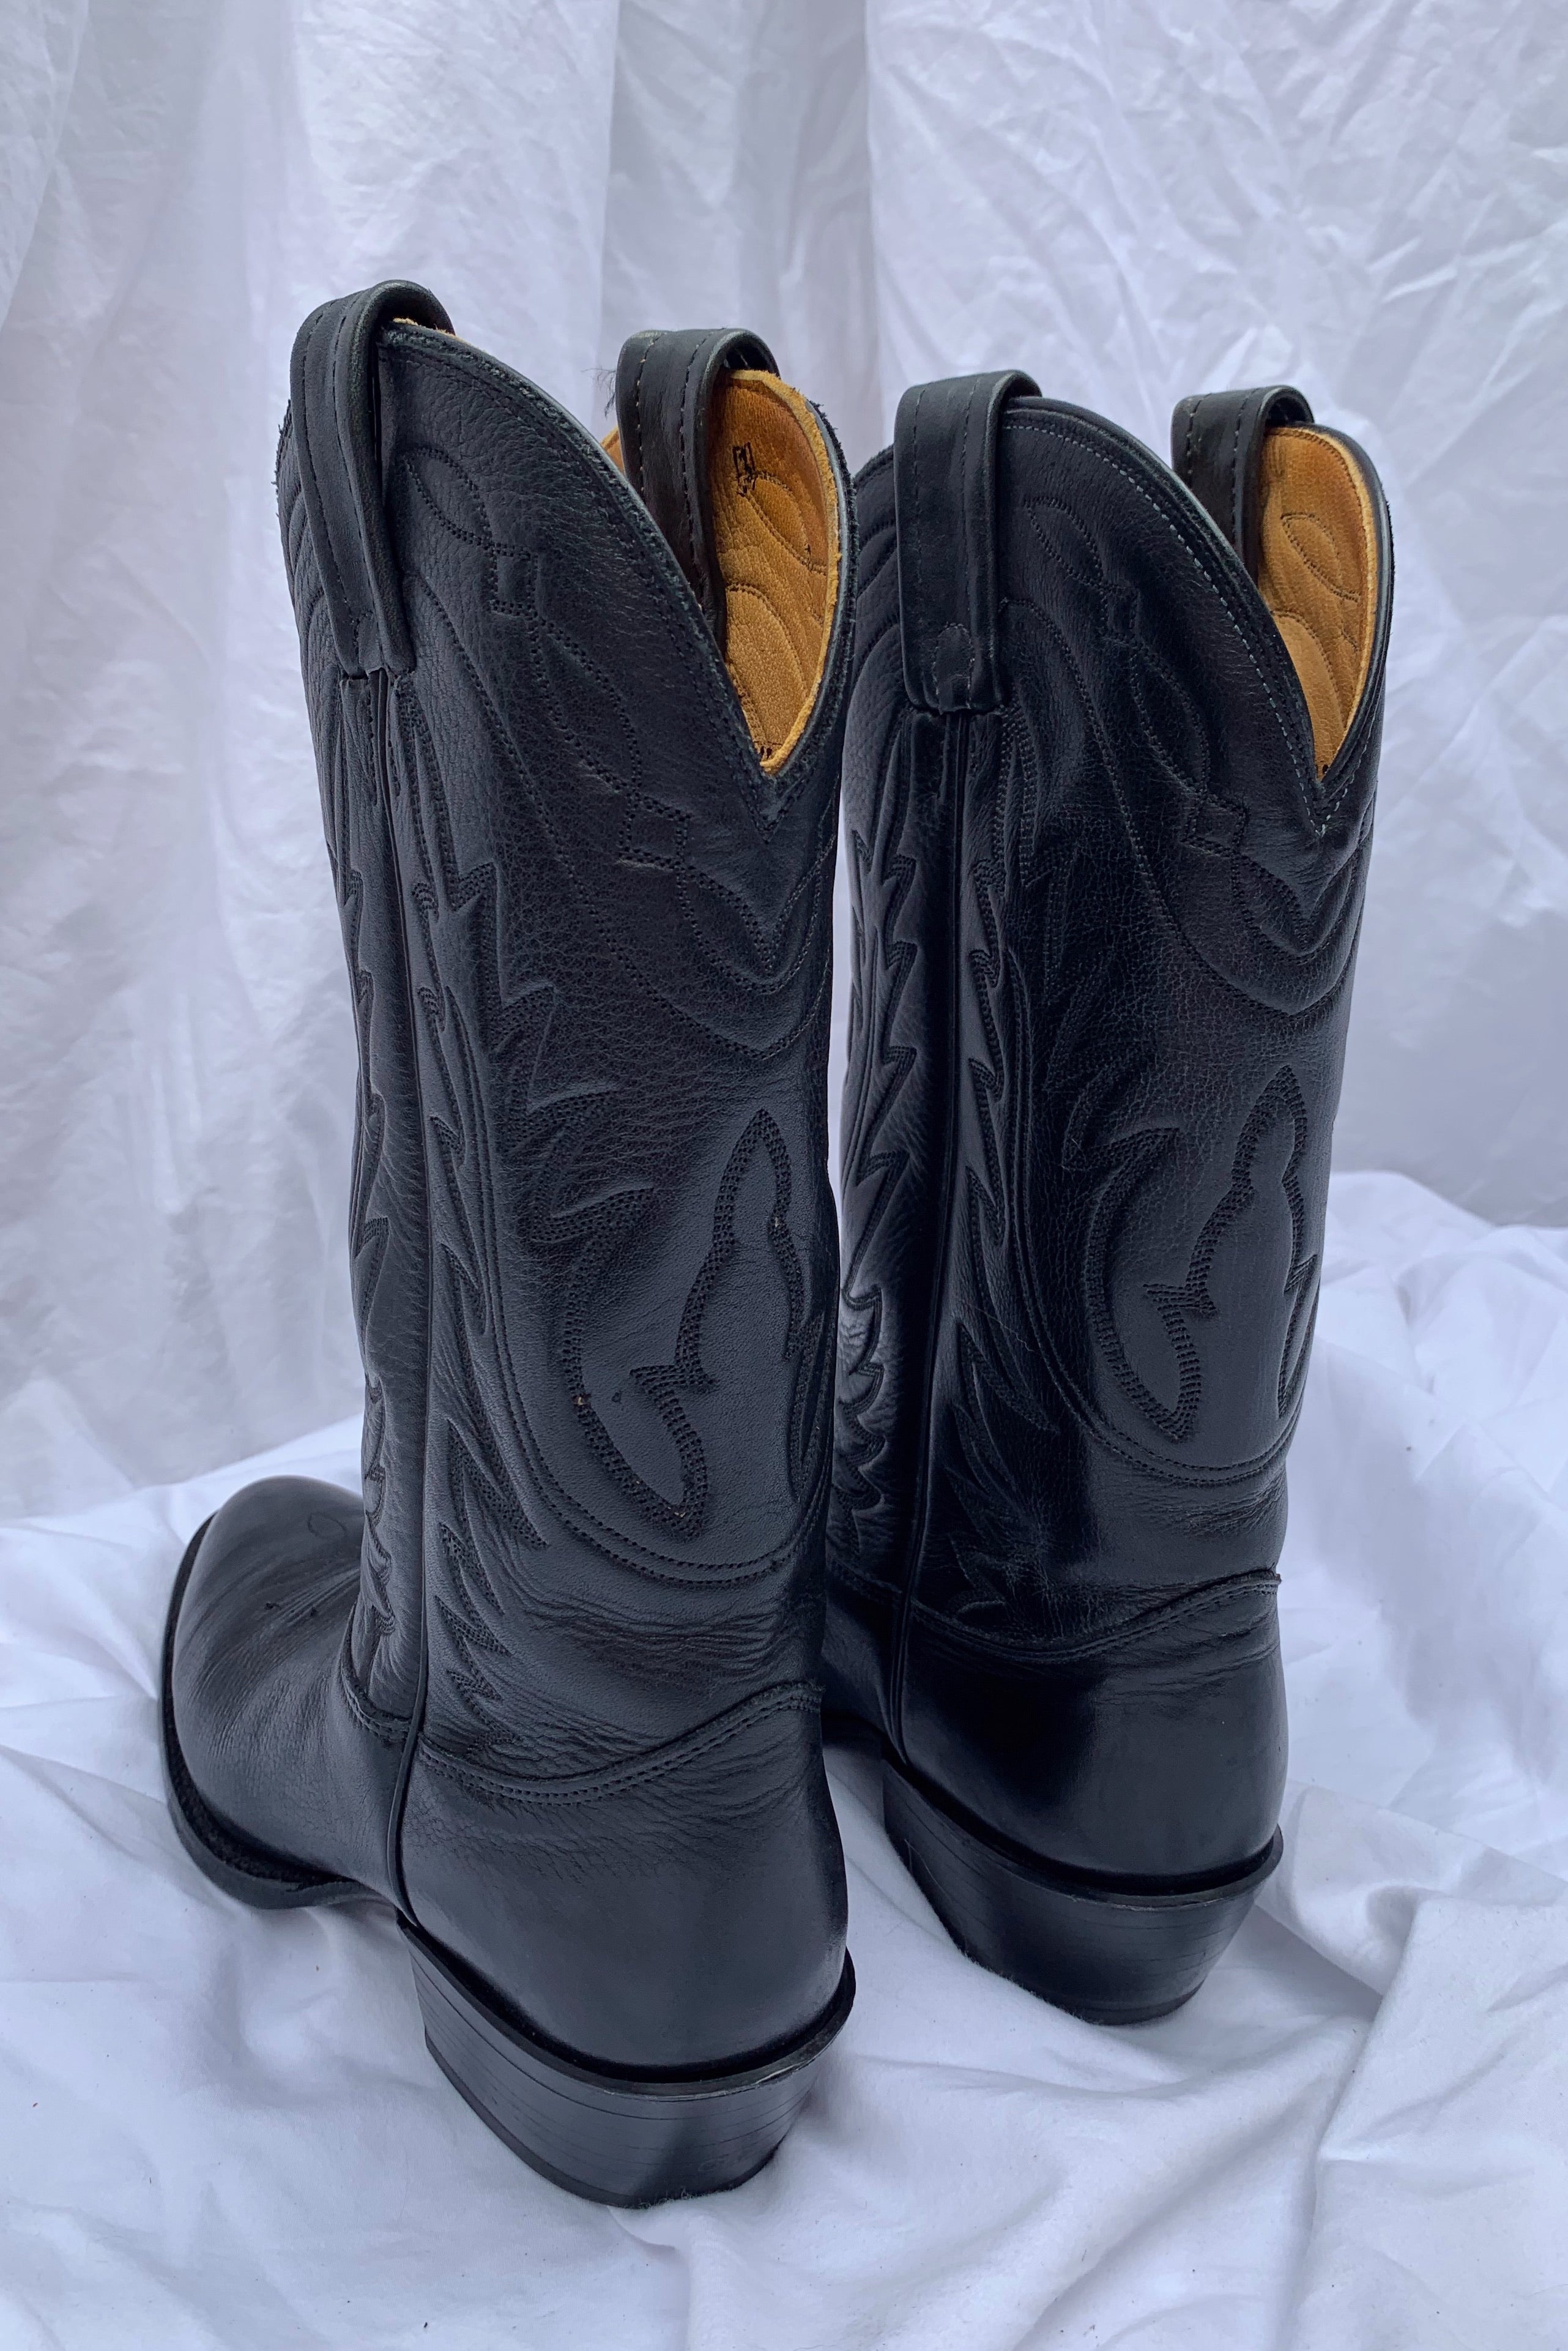 Size 8 Cowboy Boots